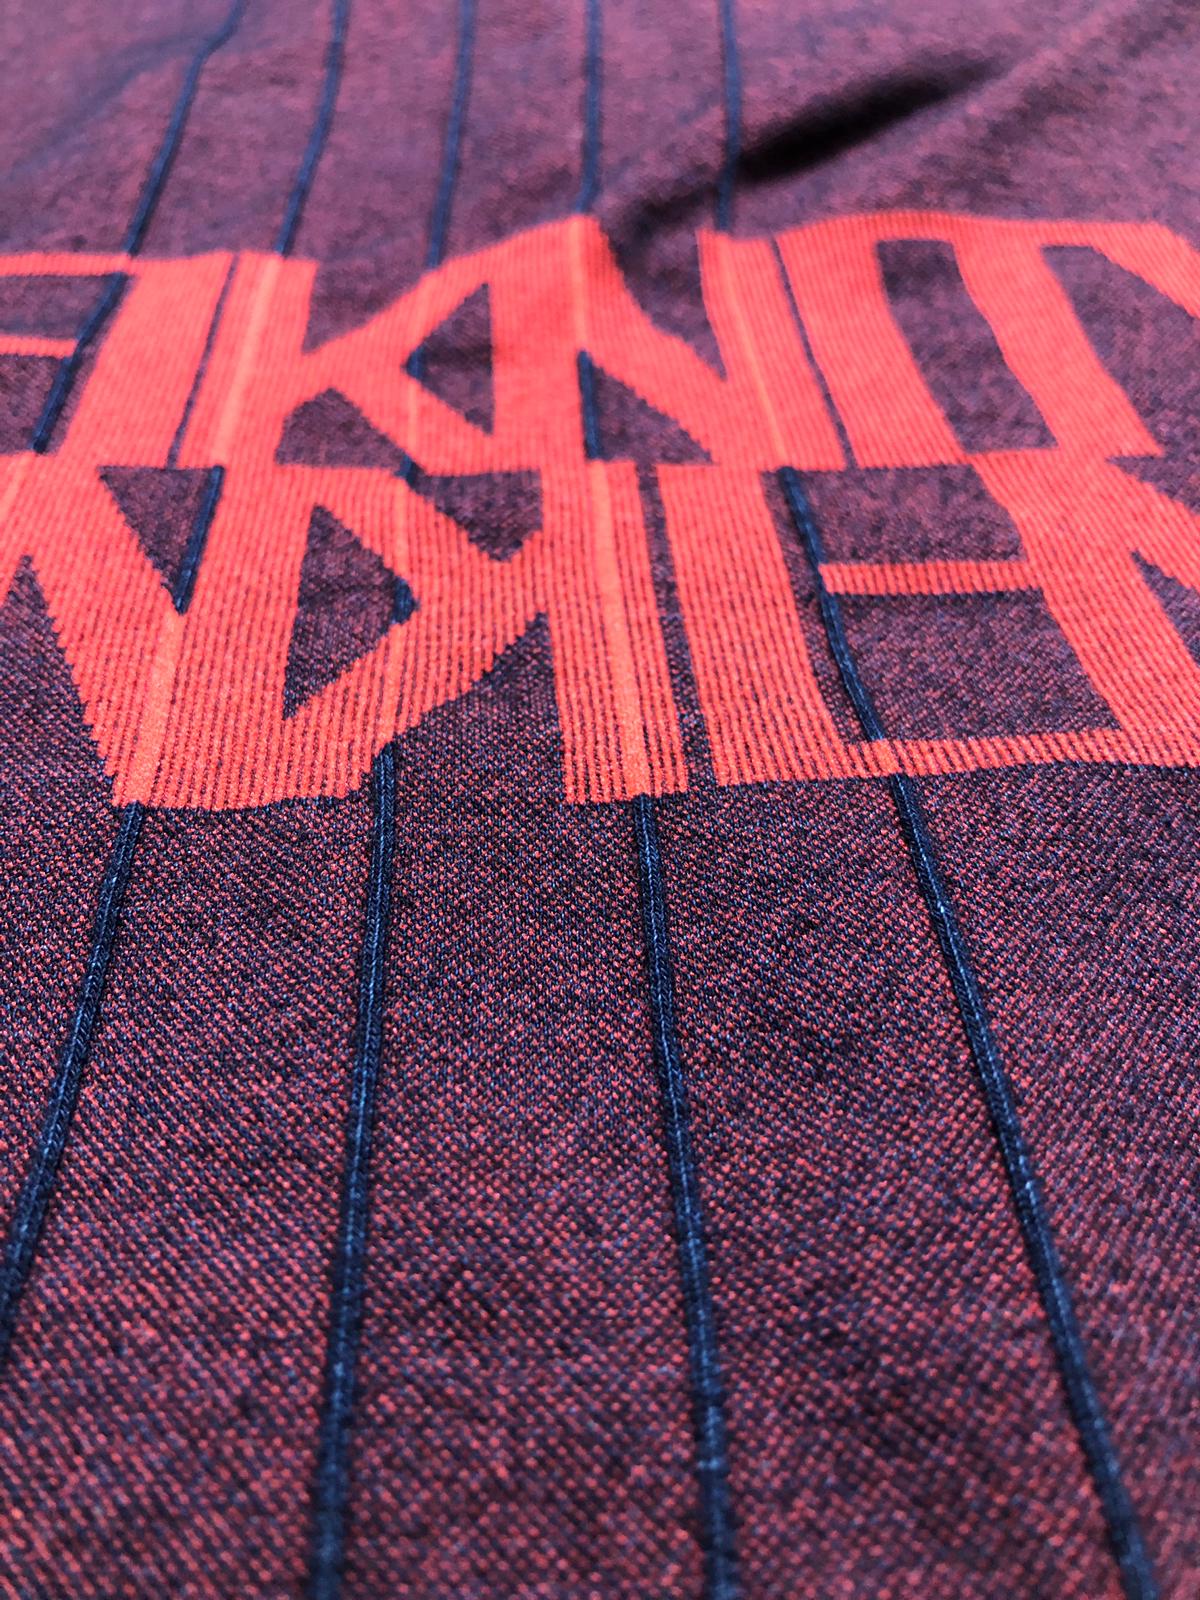 Infiknity indigo knitwear dettaglio interno maglia prototipo